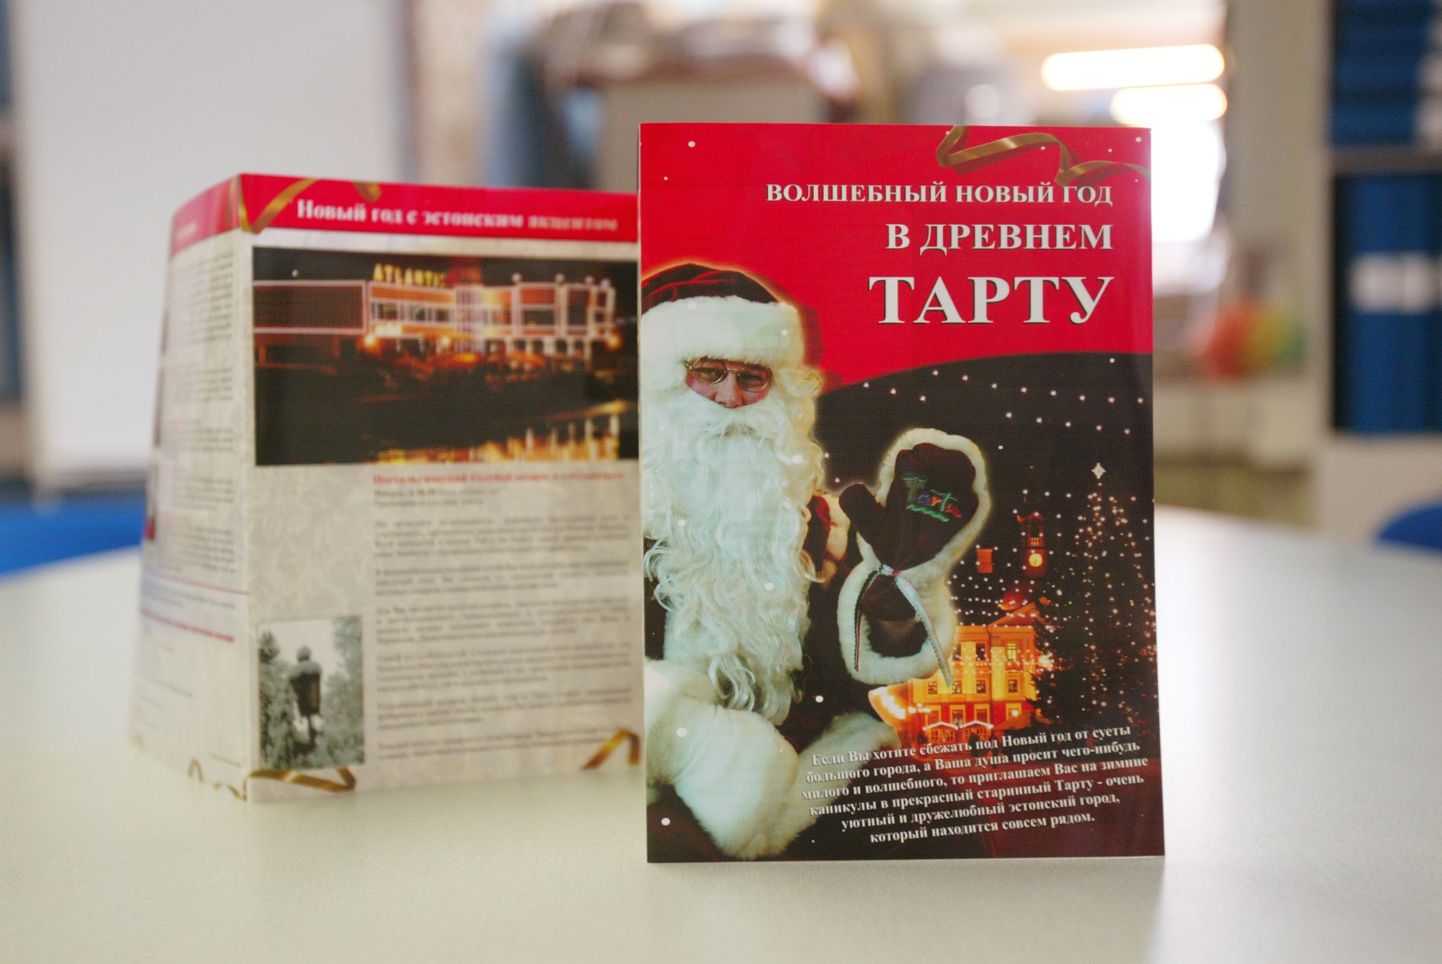 Tartu reklaamvoldik, mis püüab aastavahetuseks Tartusse meelitada Peterburi elanikke